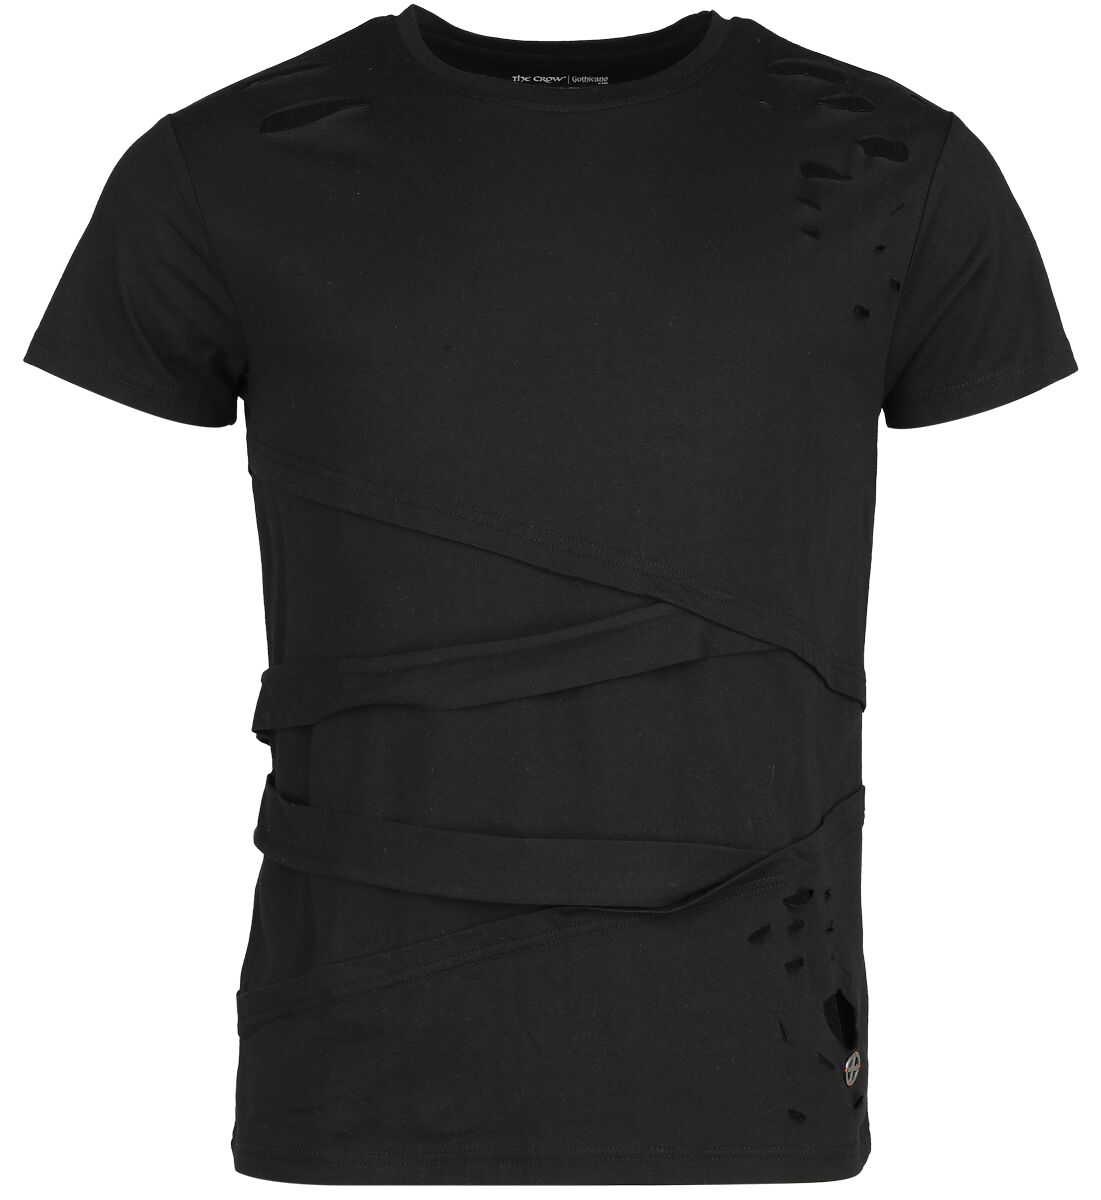 Gothicana by EMP - Gothic T-Shirt - Gothicana X The Crow T-Shirt - S bis XXL - für Männer - Größe XL - schwarz